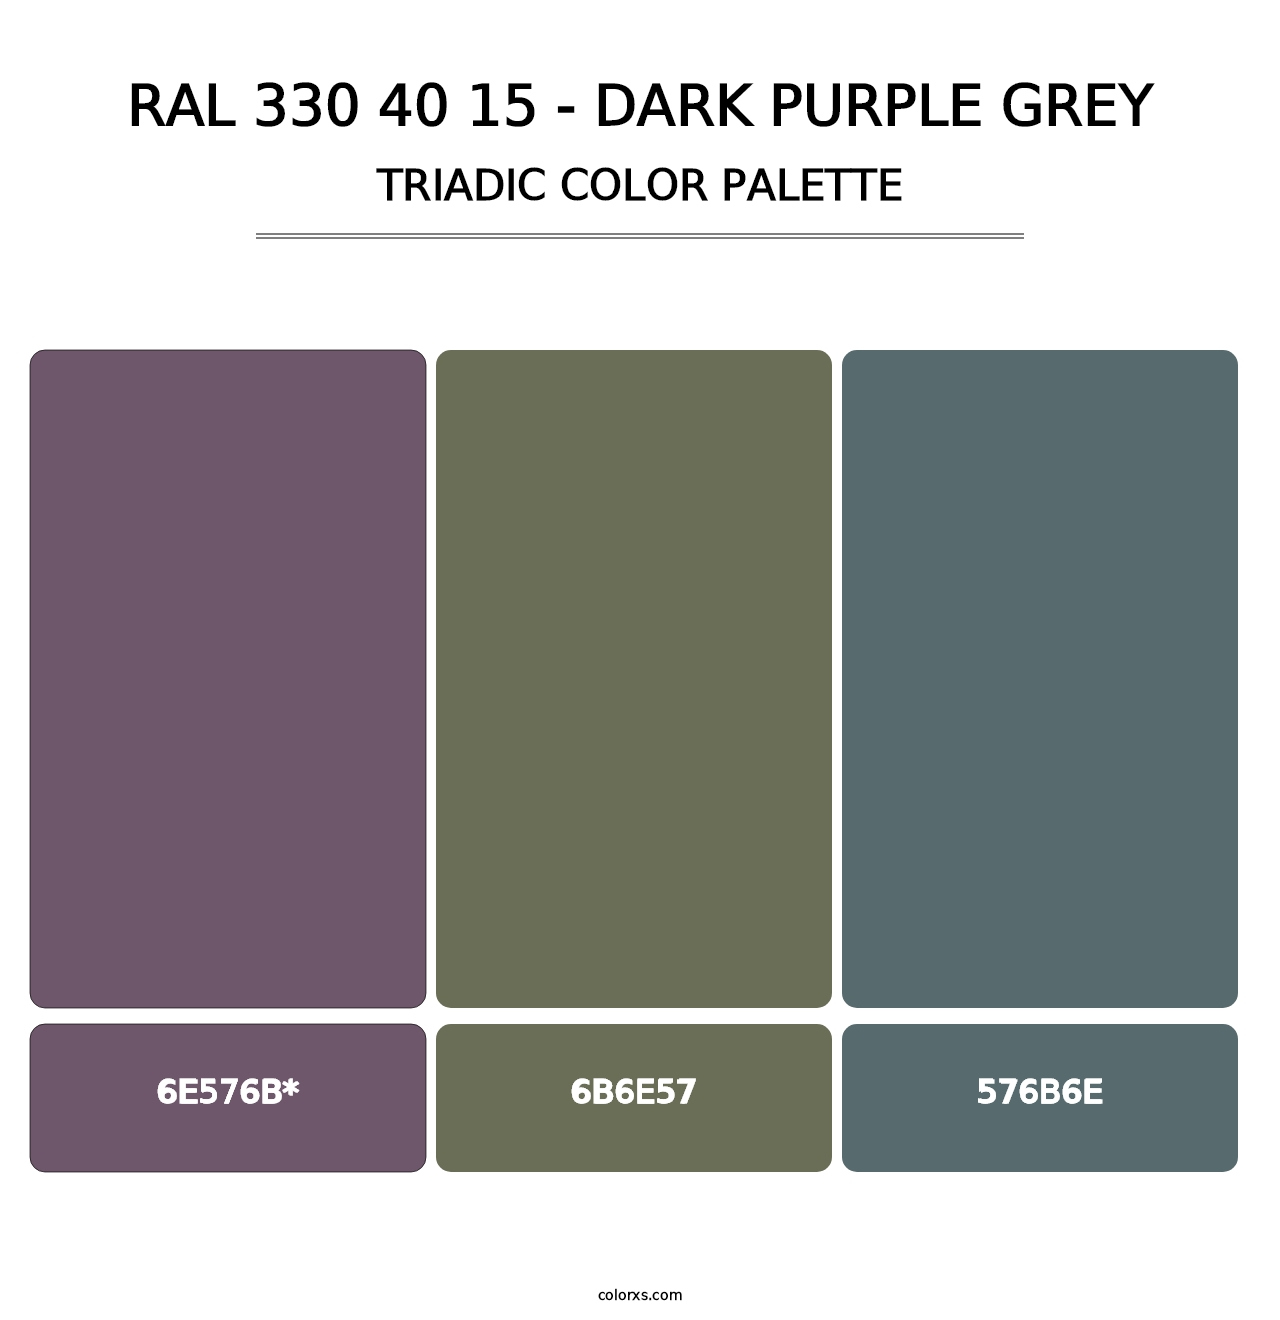 RAL 330 40 15 - Dark Purple Grey - Triadic Color Palette